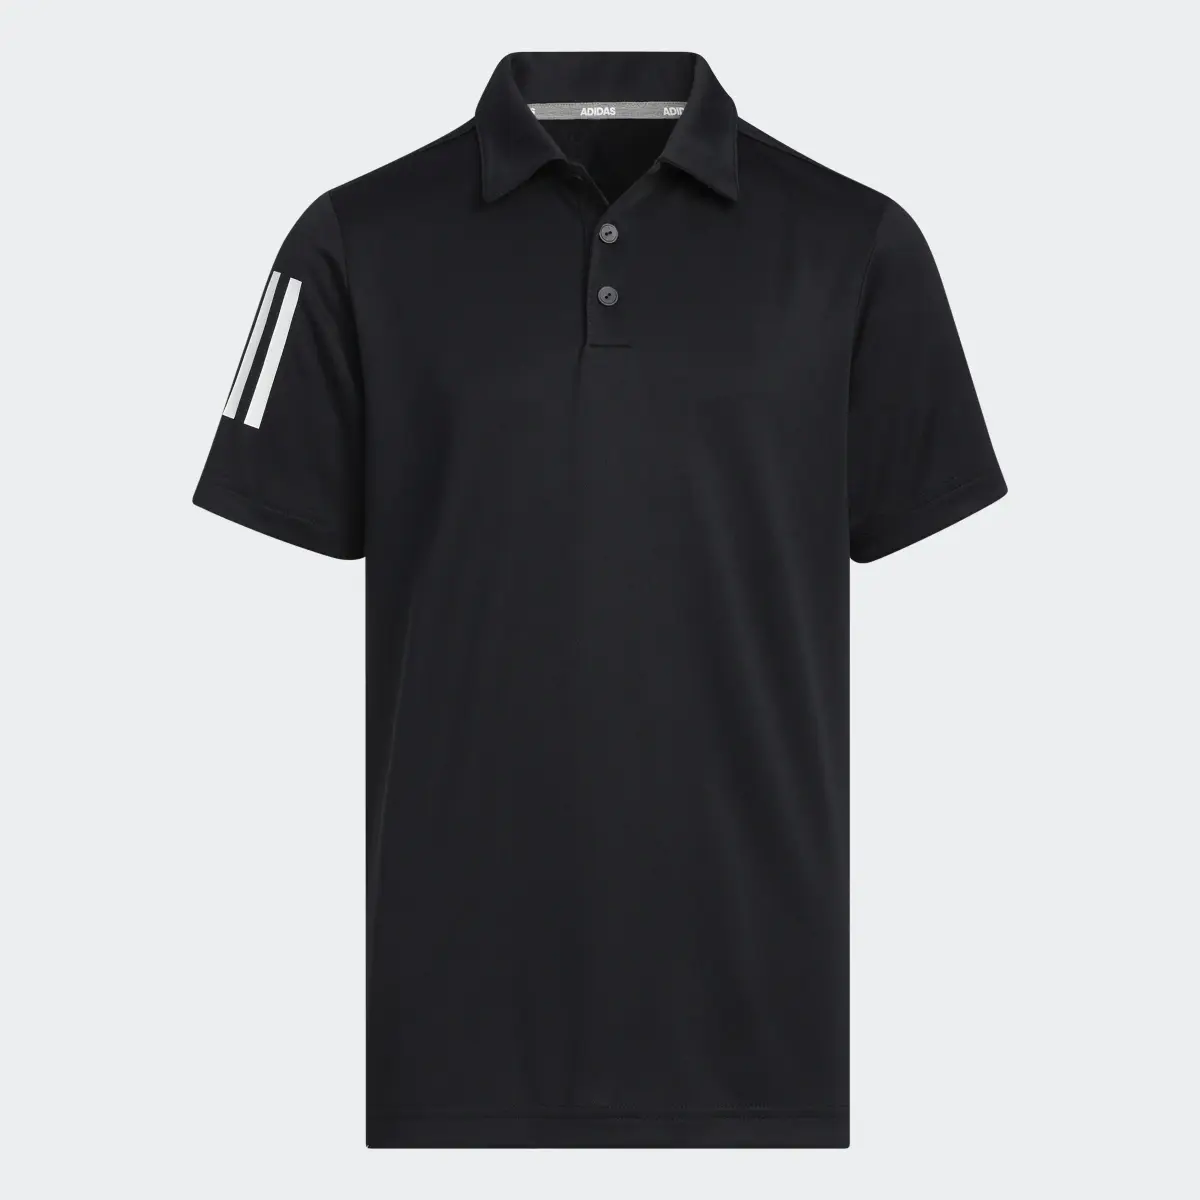 Adidas 3-Streifen Poloshirt. 1